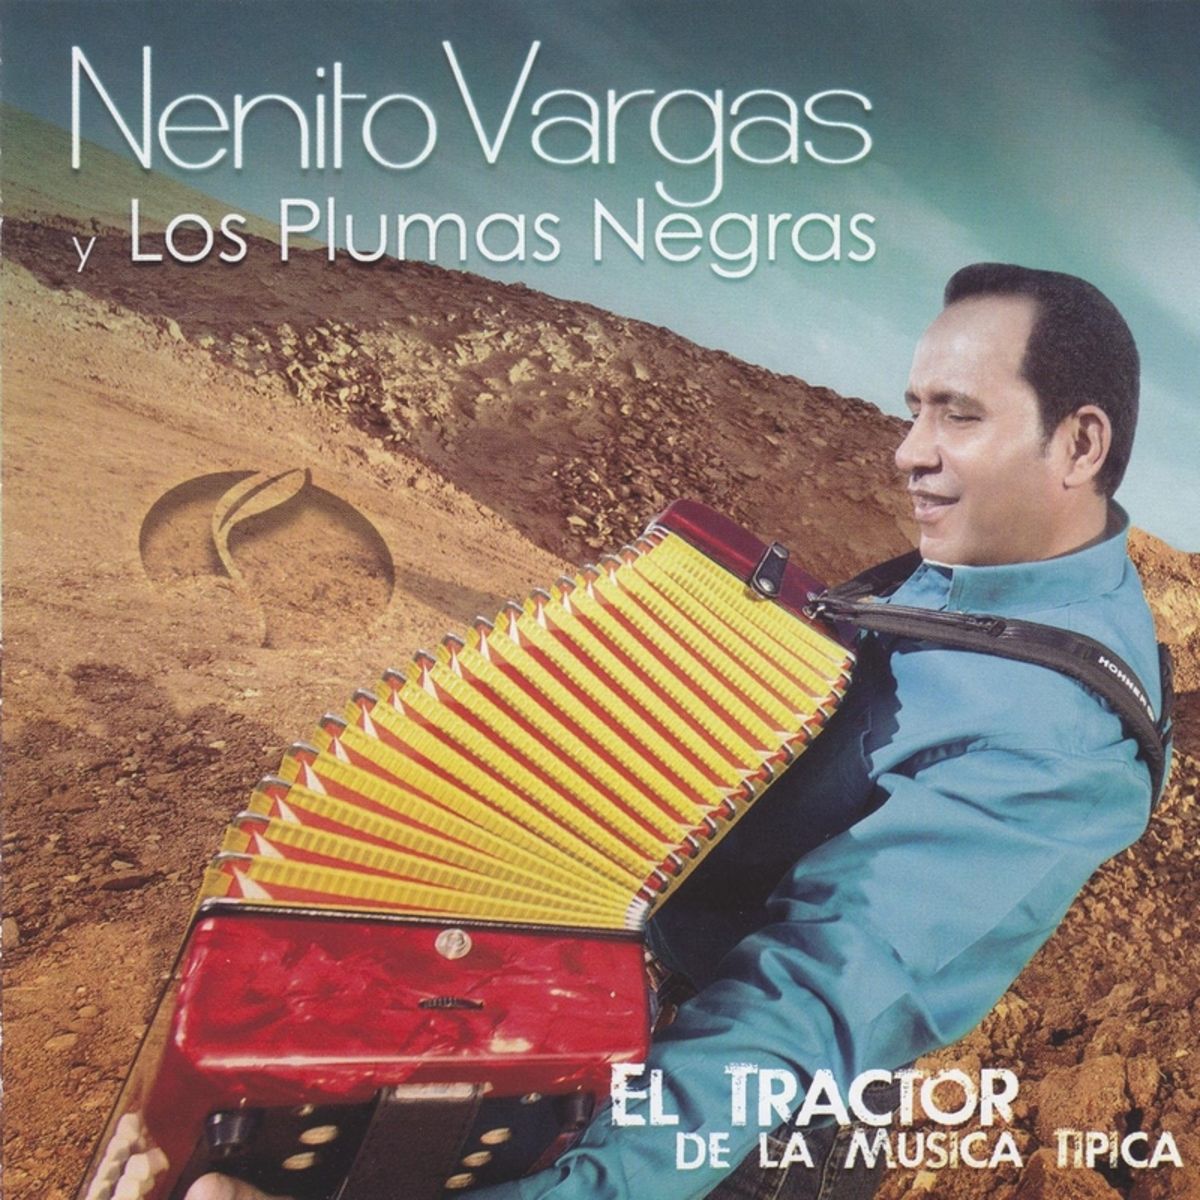 2 - Nenito Vargas y los Plumas Negras - Nada de Mas.mp3